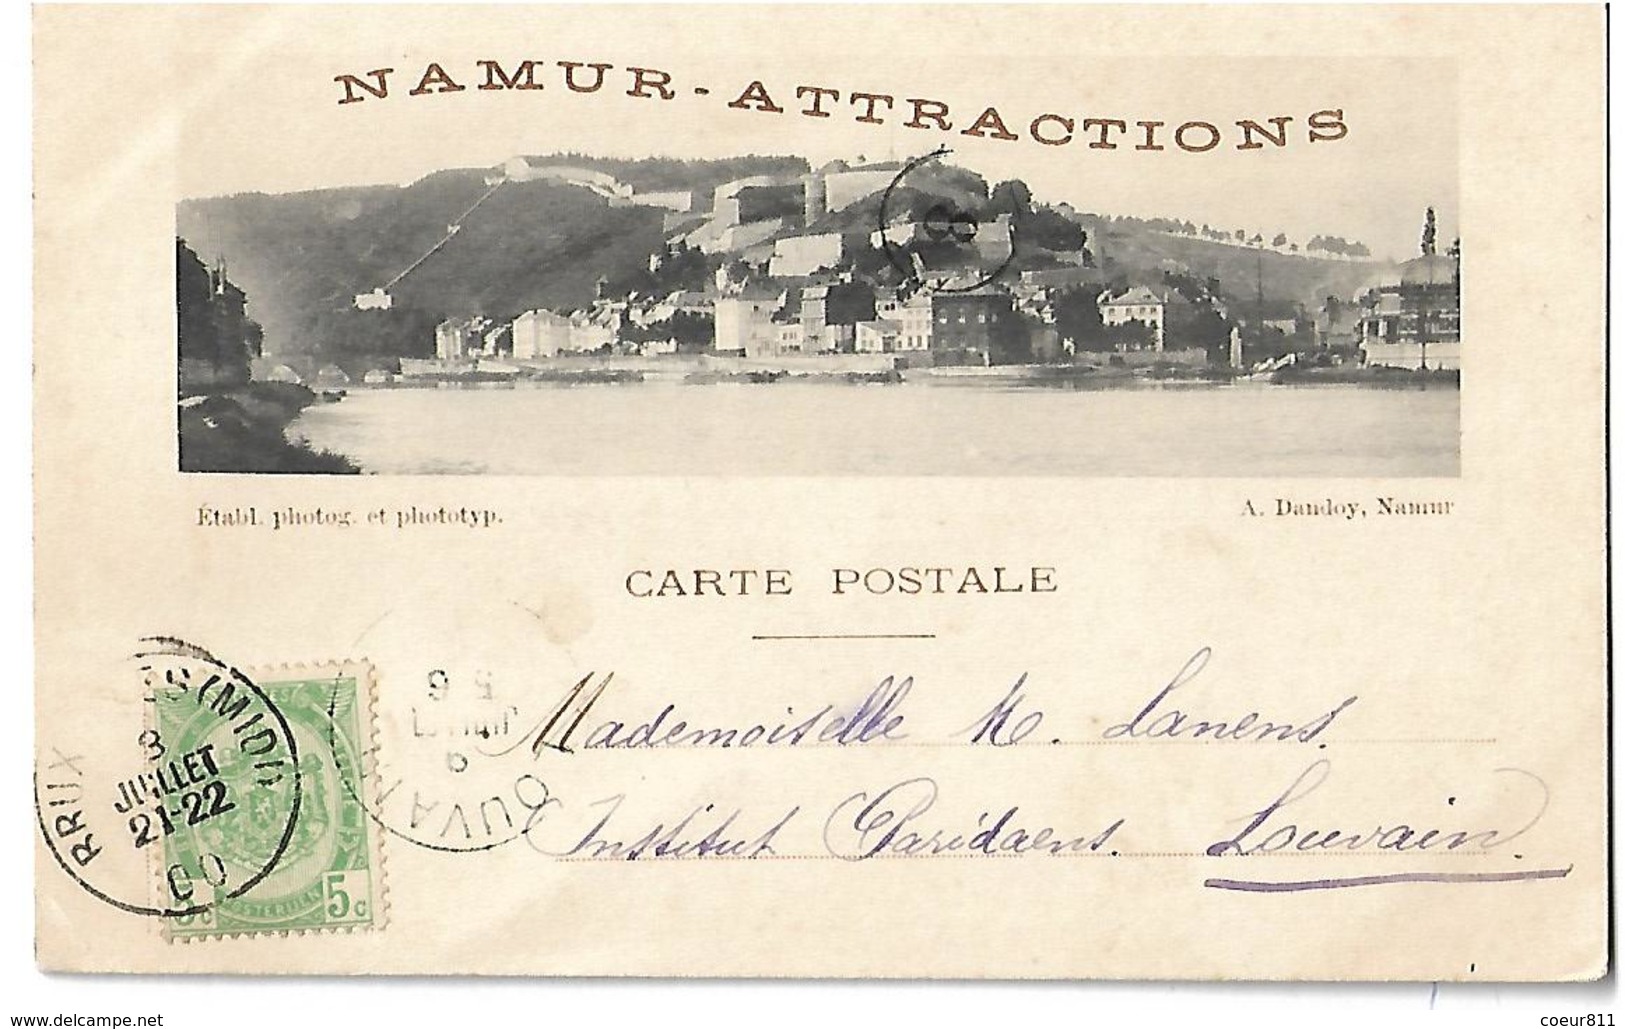 NAMUR - Namur